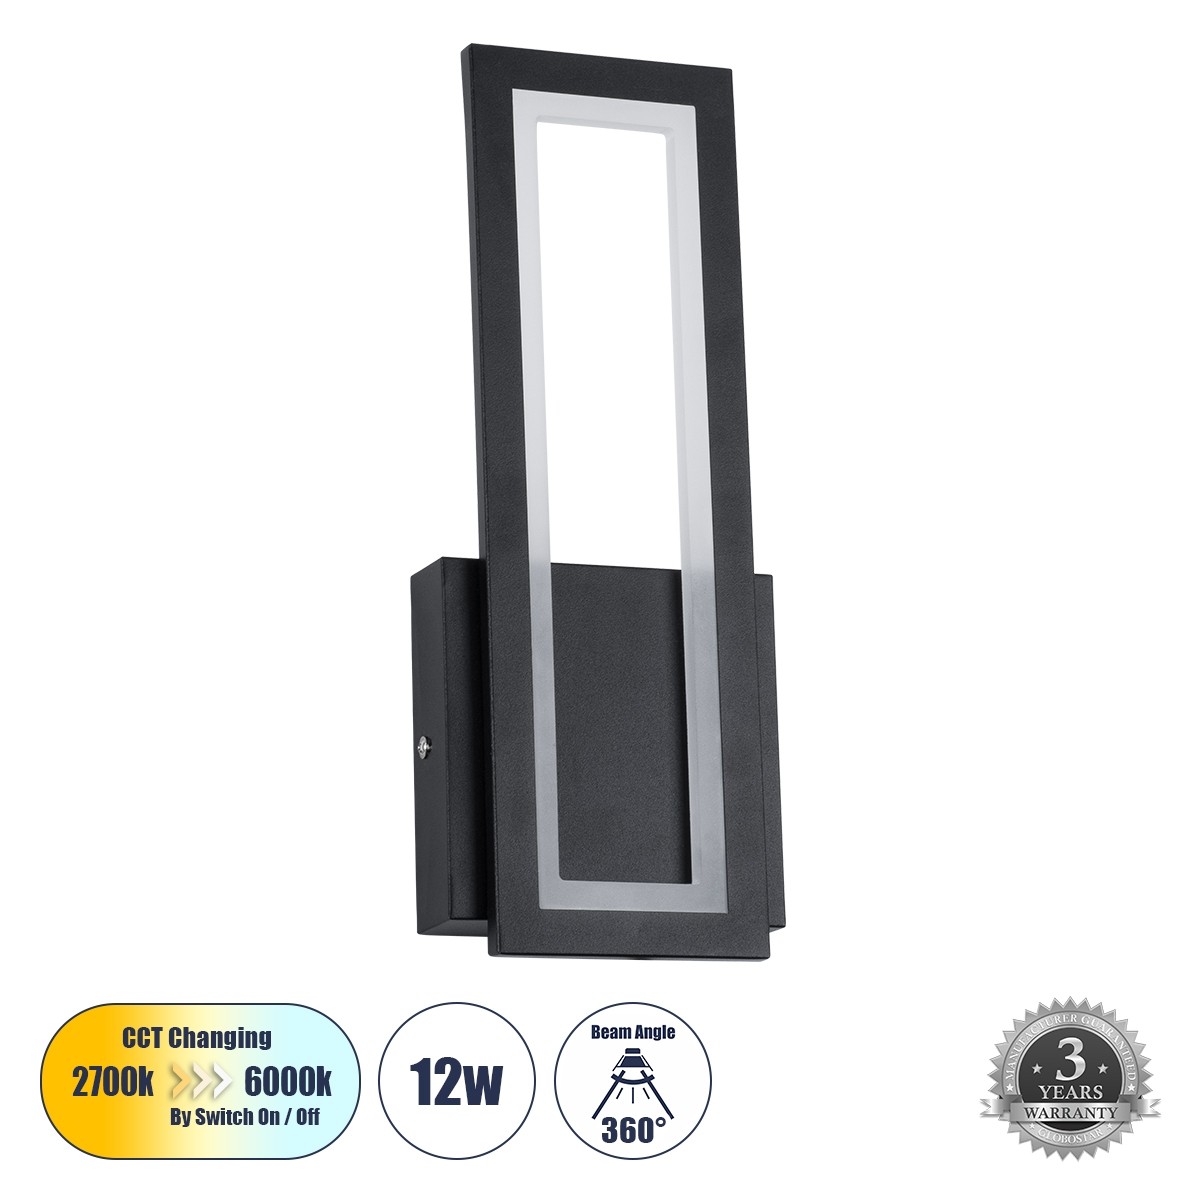 LED Φωτιστικό Τοίχου - Απλίκα Μαύρη TIARA 12W με Εναλλαγή Φωτισμού μέσω Διακόπτη On/Off Μ12.5 x Π4 x Υ32cm 61327